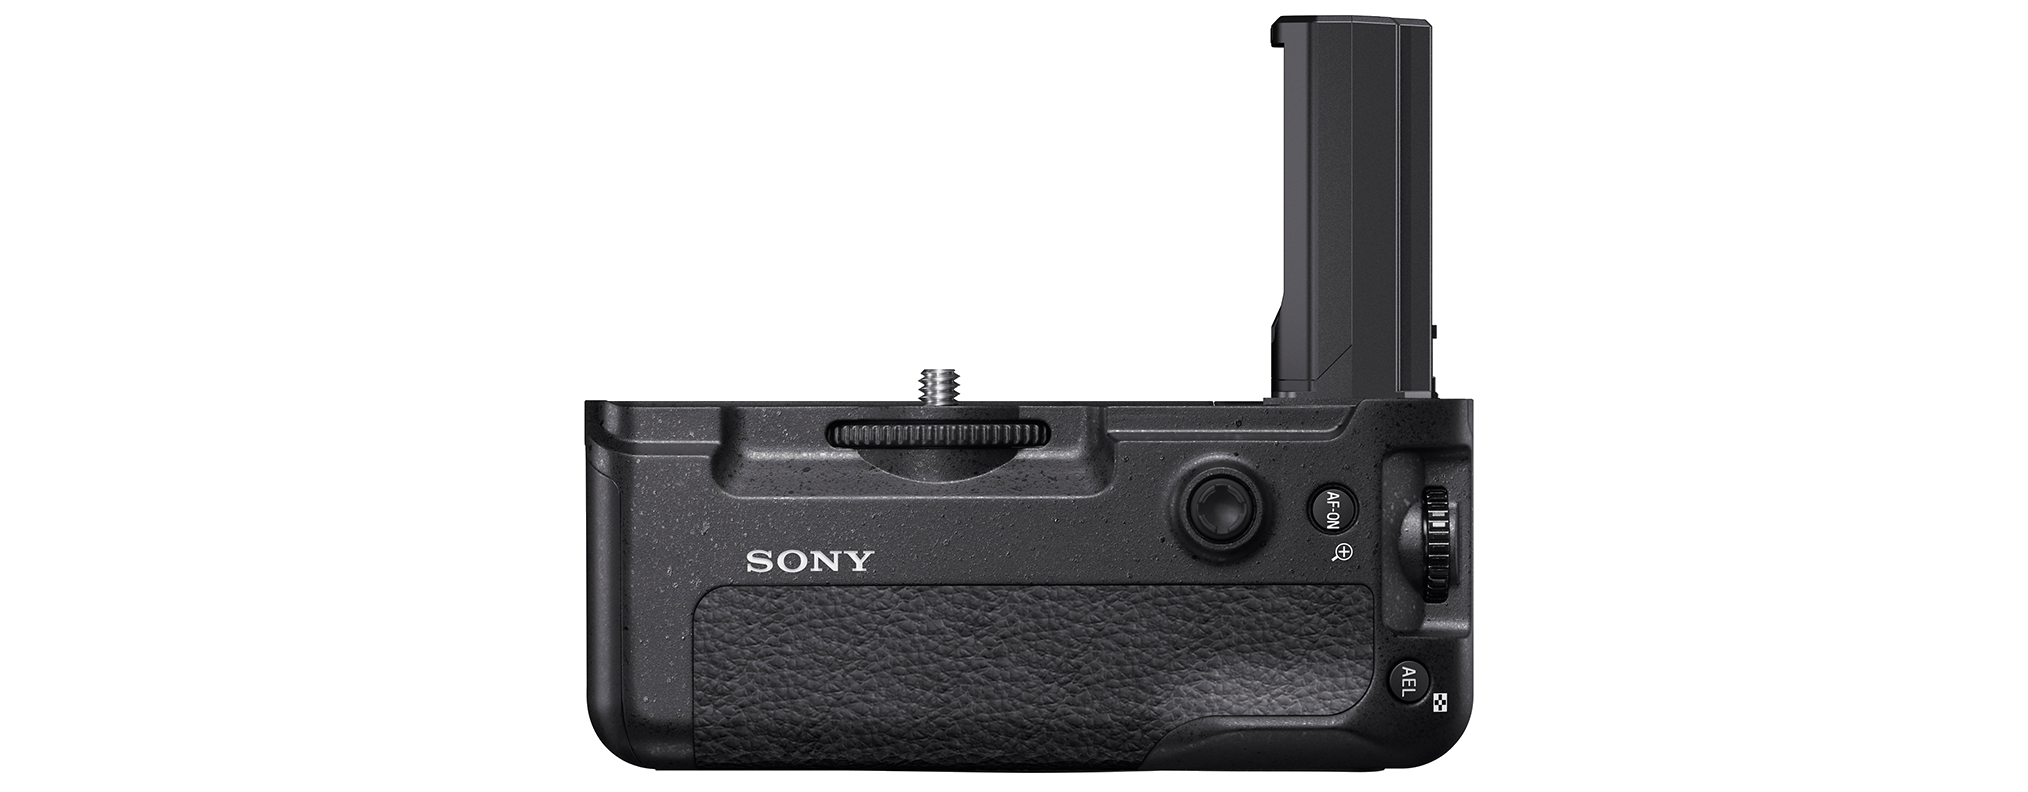 Uchwyt do zdjęć do aparatu Sony α9 | VG-C3EM